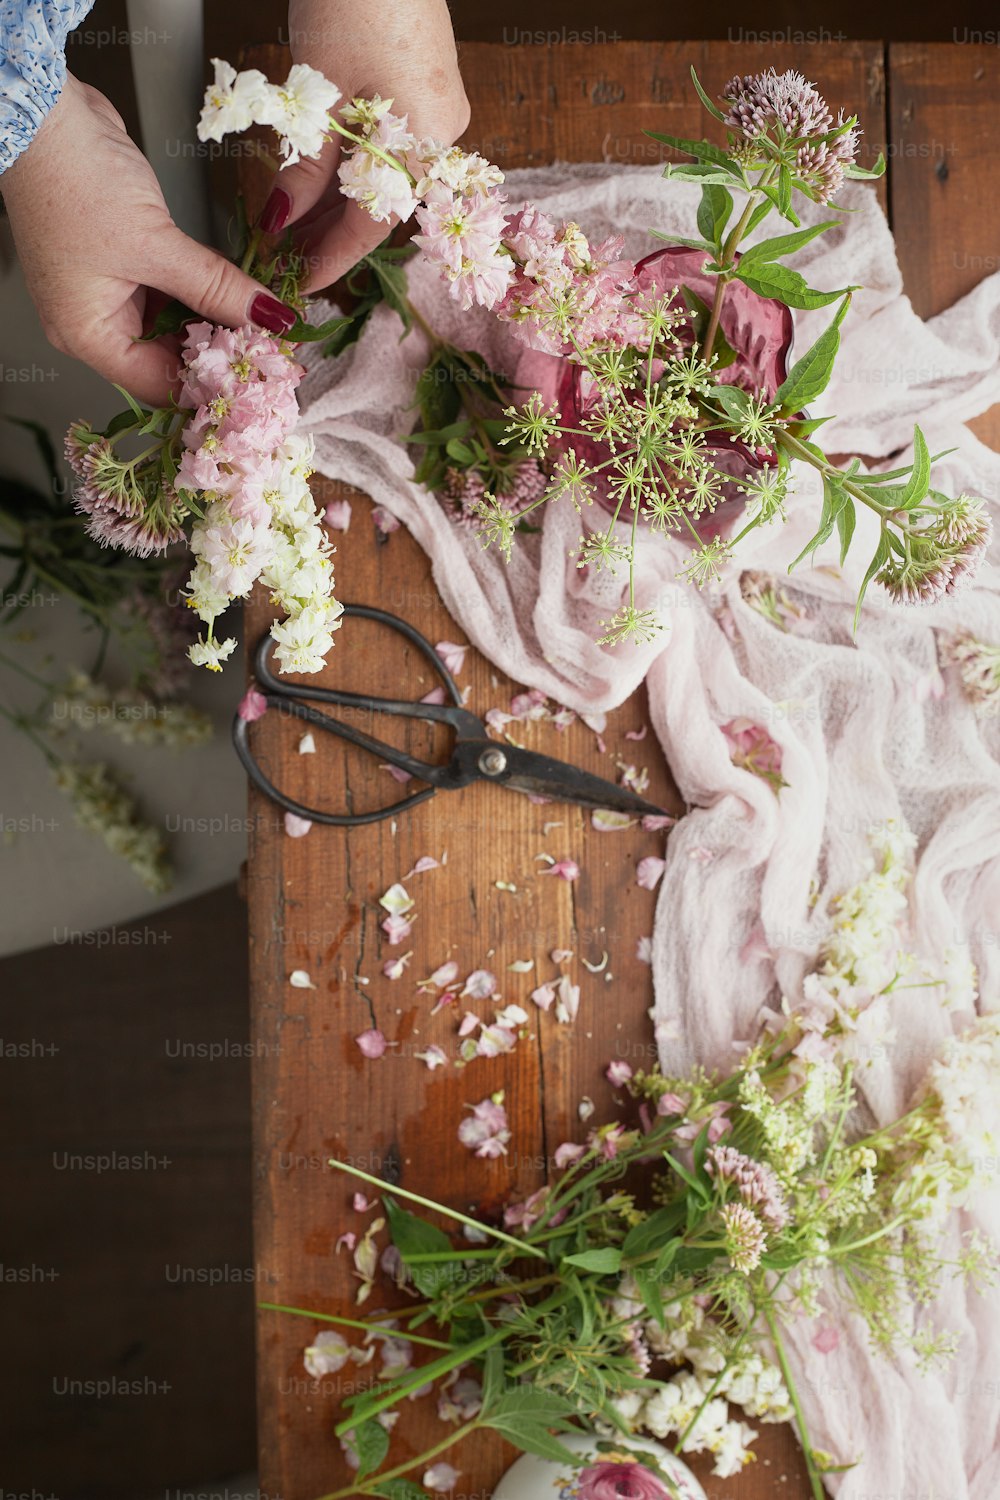 Una persona cortando flores con un par de tijeras